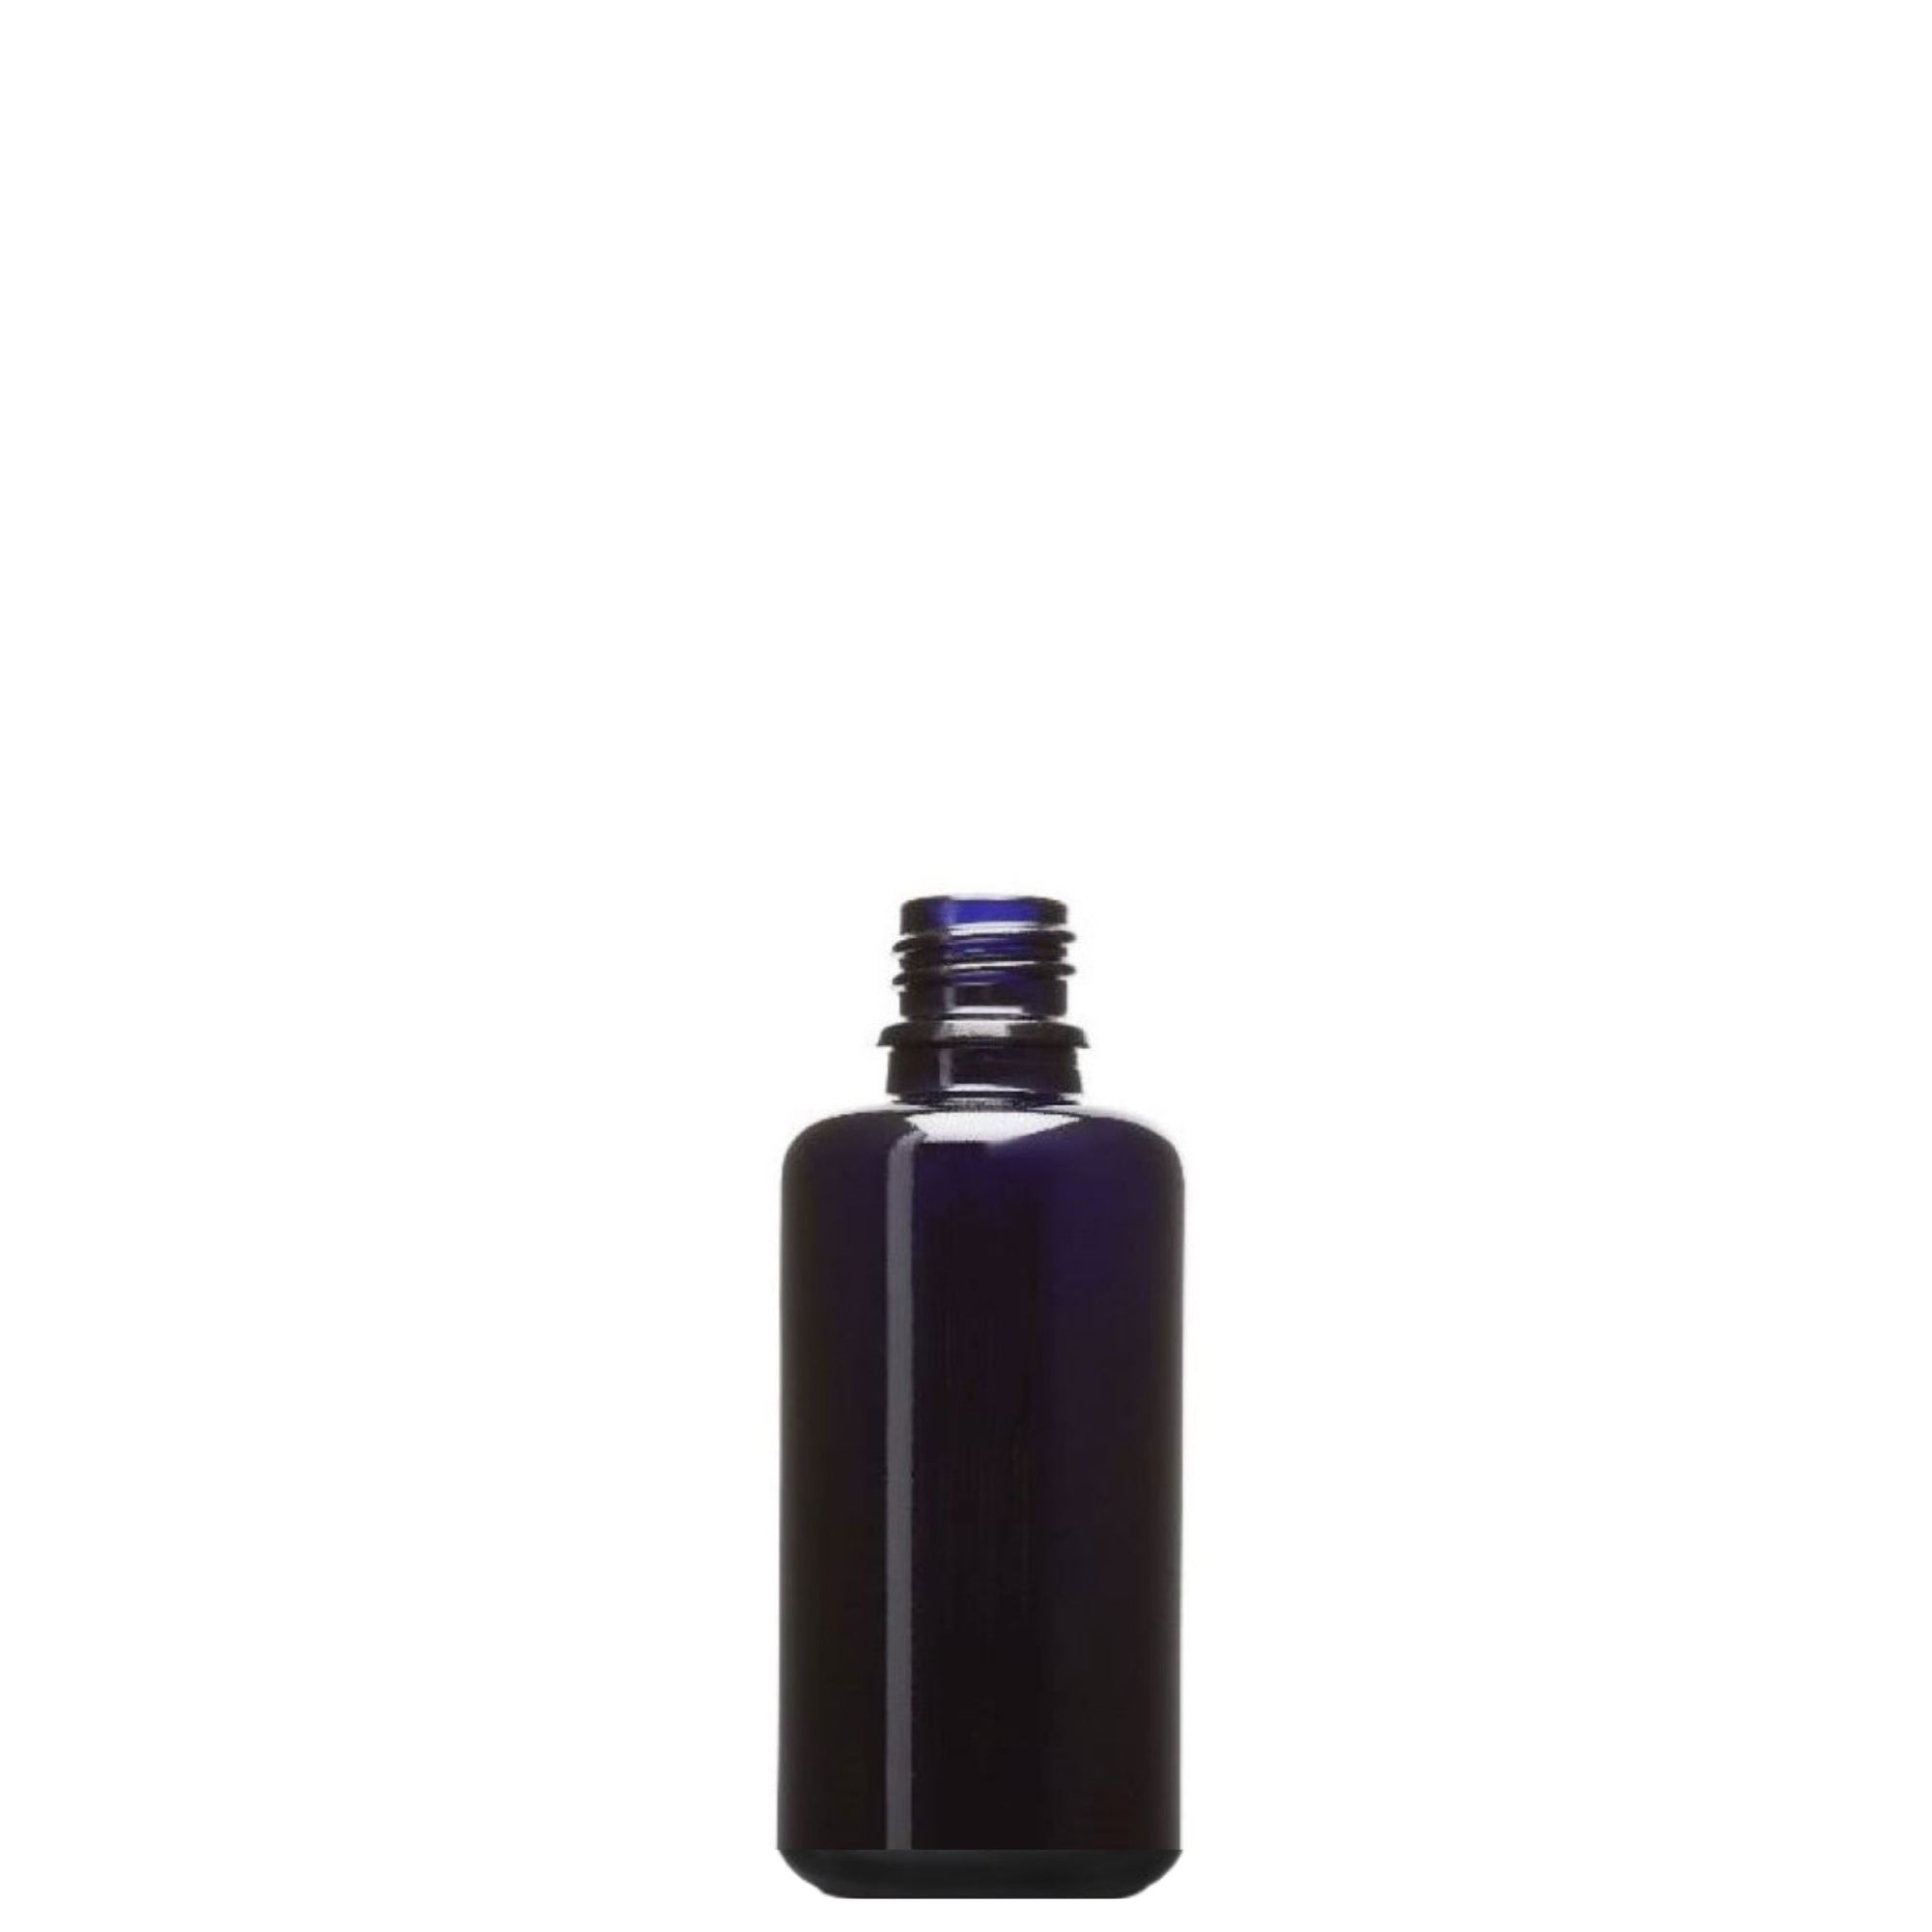 Violettglasflasche Naturkosmetik Zubehör oelfaktorisch 